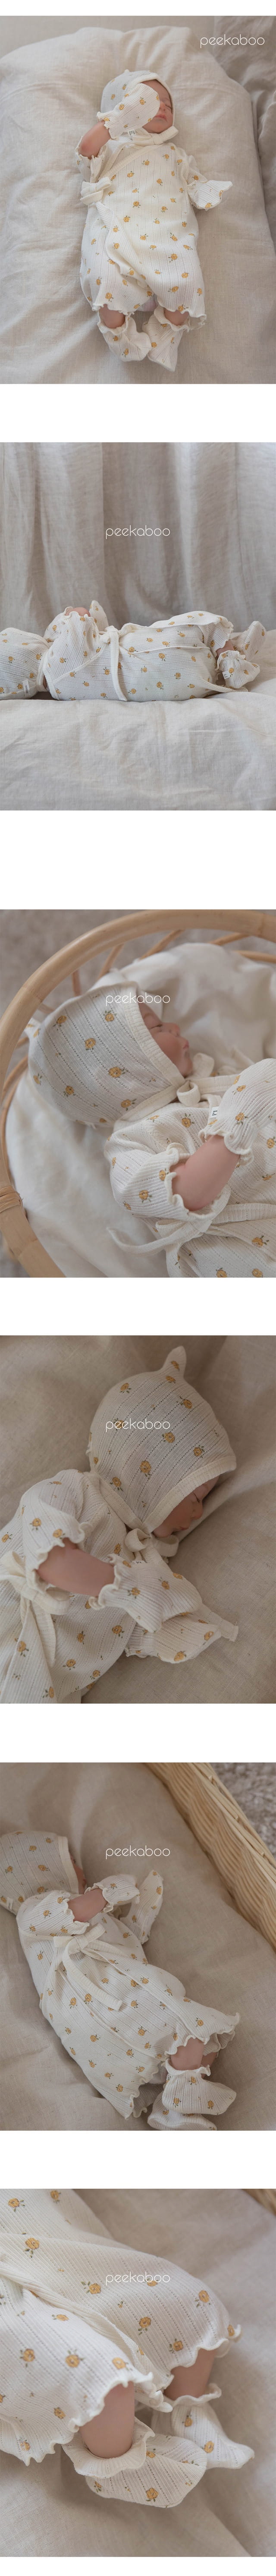 Peekaboo - Korean Baby Fashion - #babyboutique - Darling Benet Bodysuit Set - 5